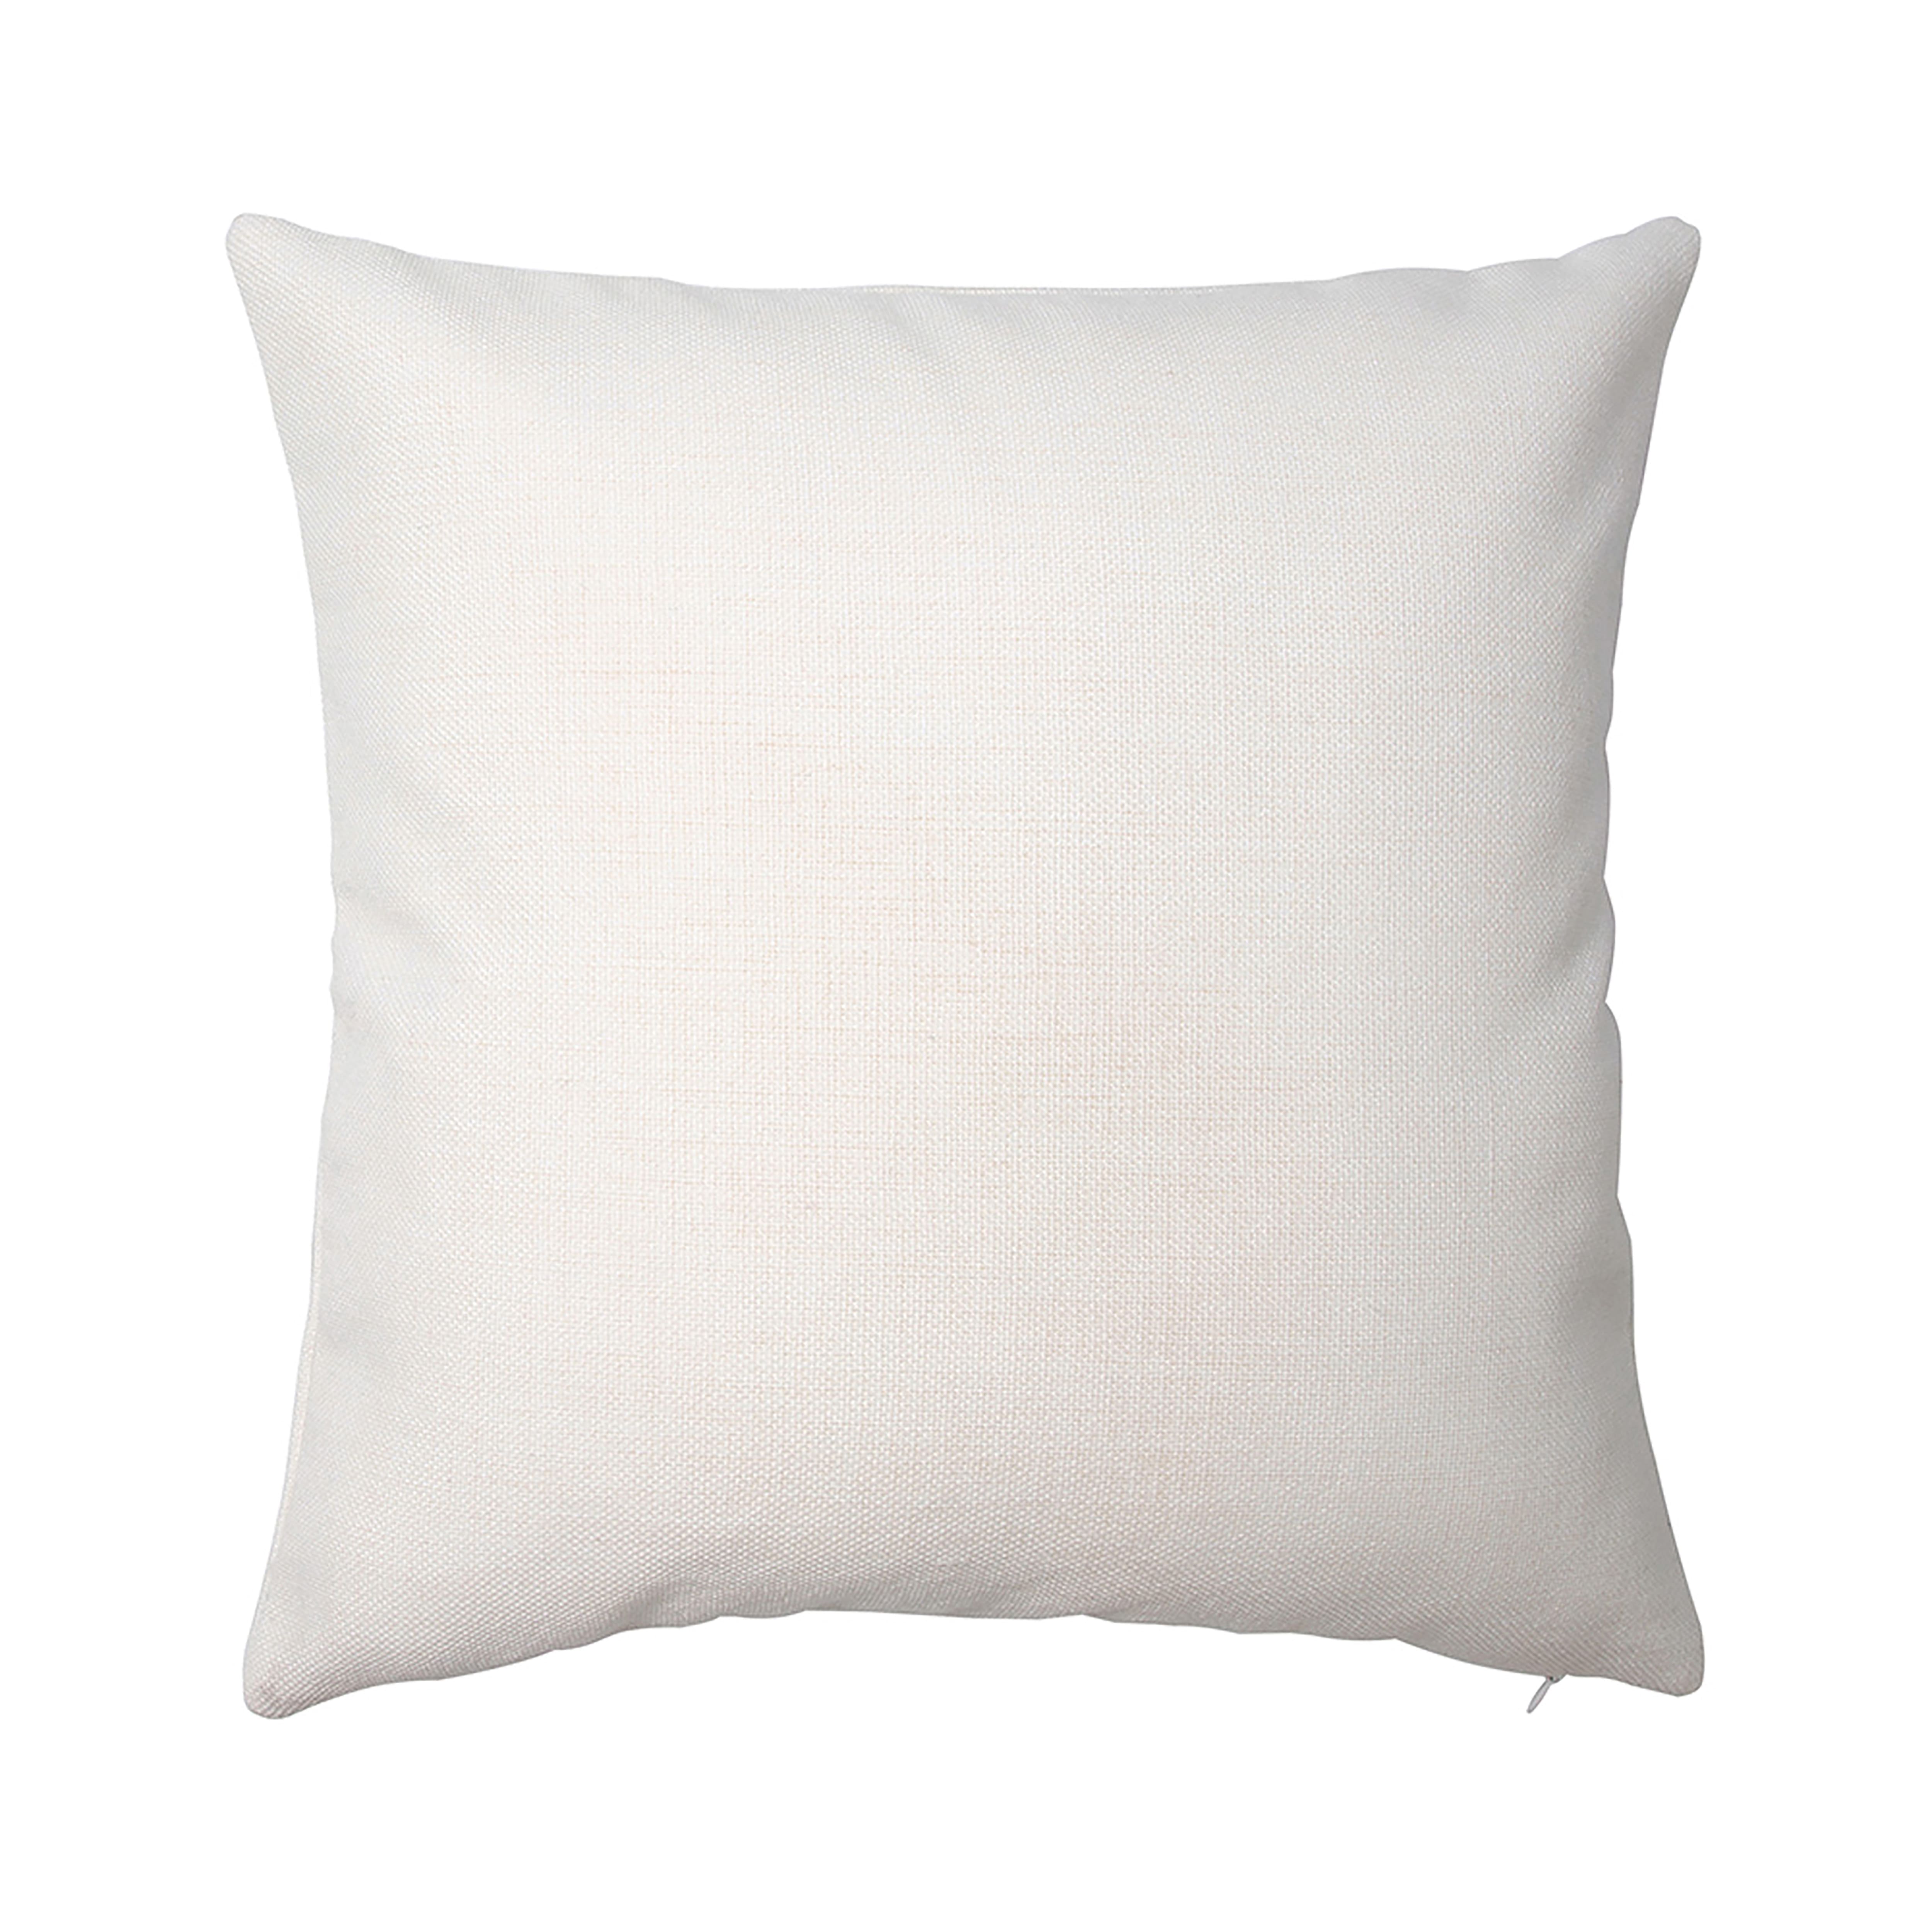 Craft Express Ivory Linen Pillow Cover Set